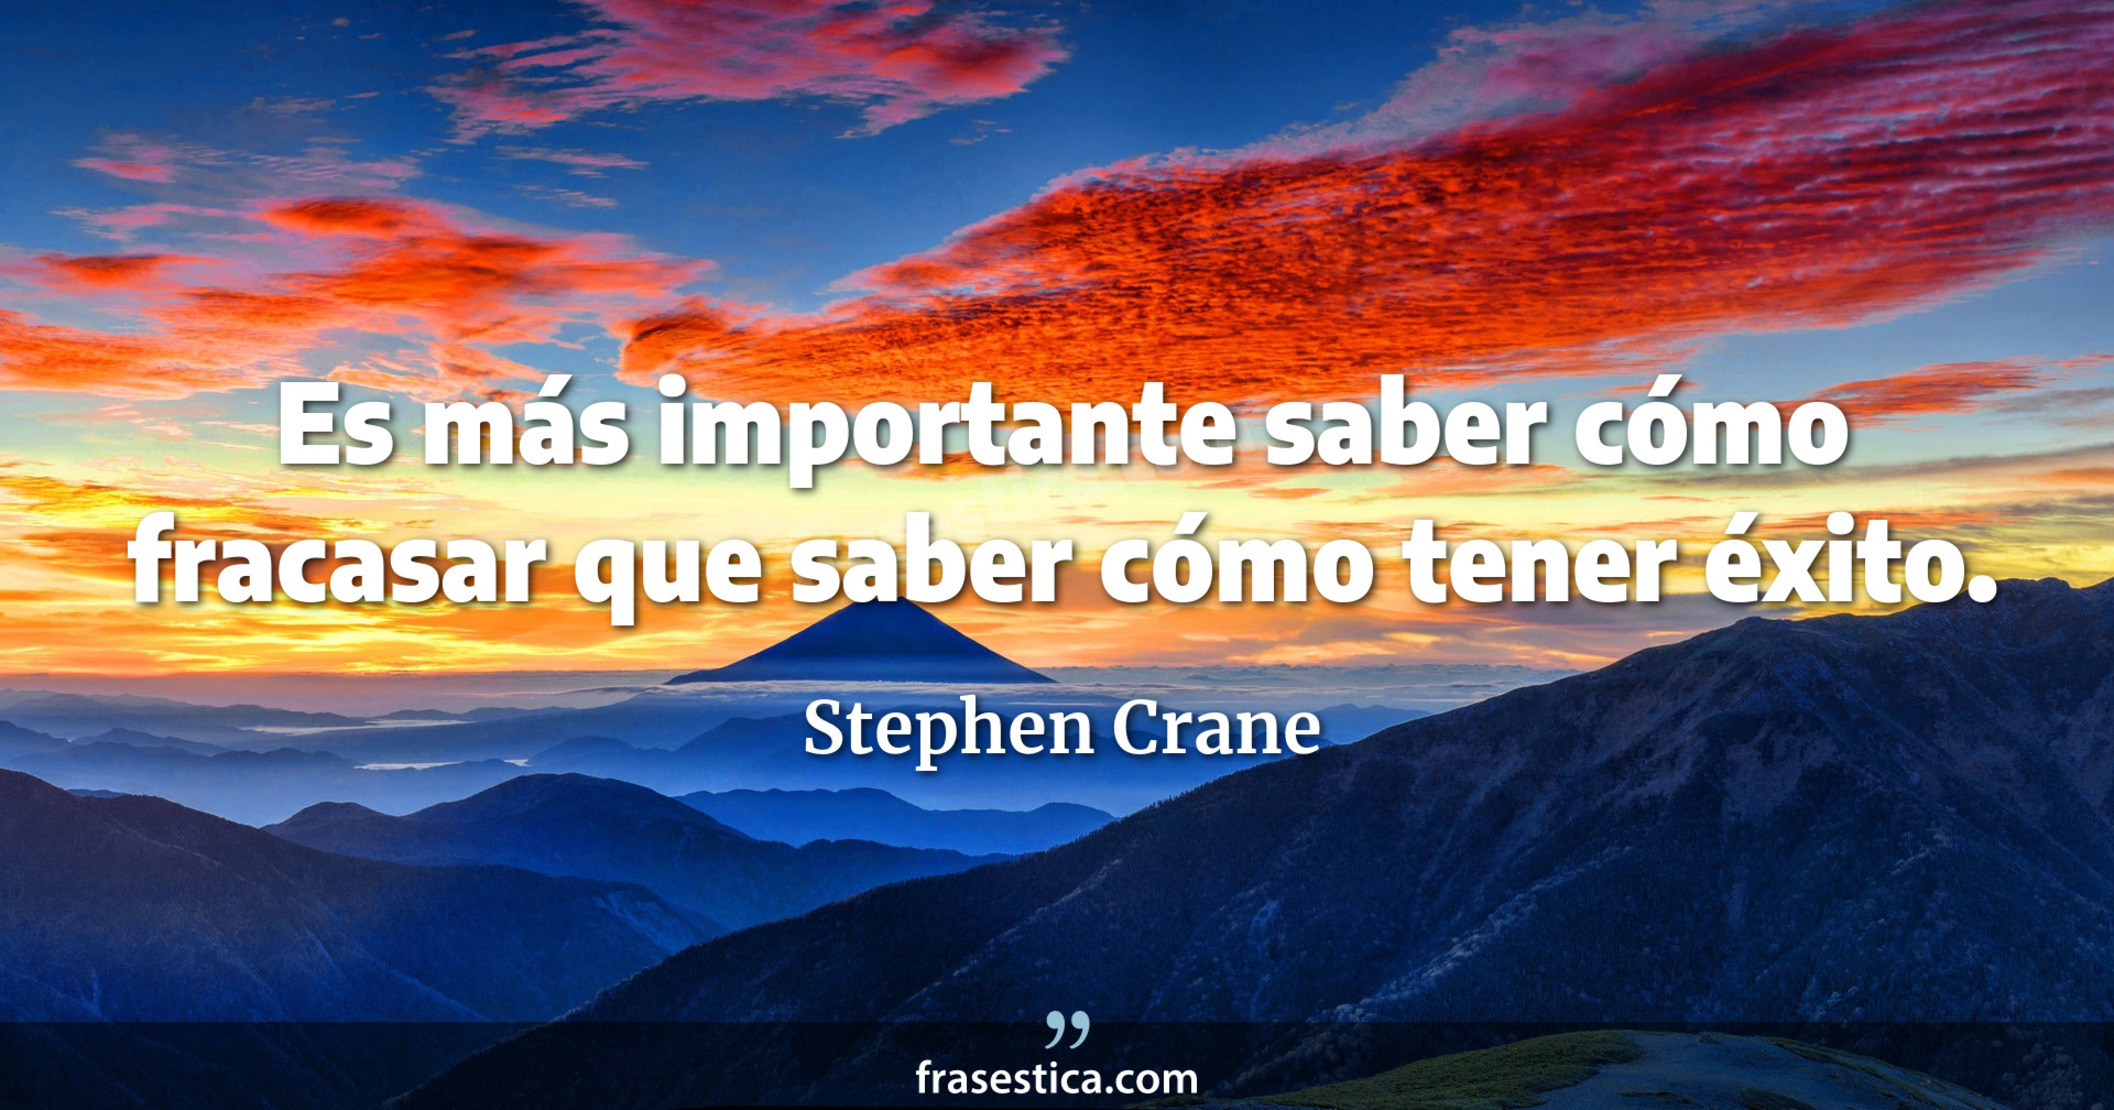 Es más importante saber cómo fracasar que saber cómo tener éxito. - Stephen Crane